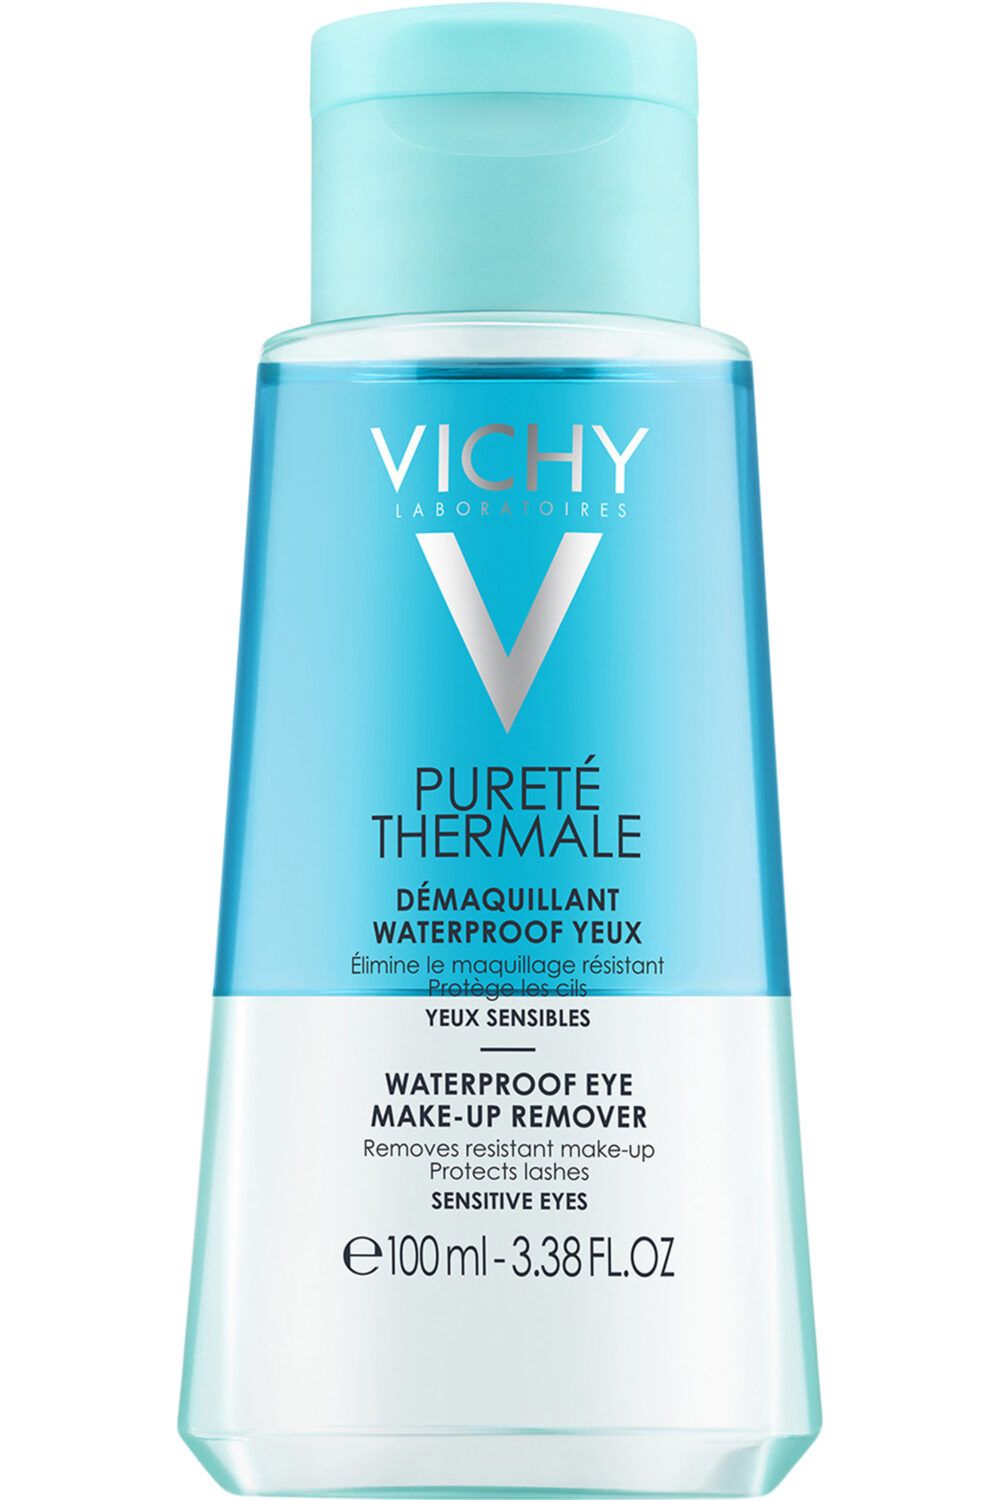 Vichy - Démaquillant waterproof yeux Pureté Thermale